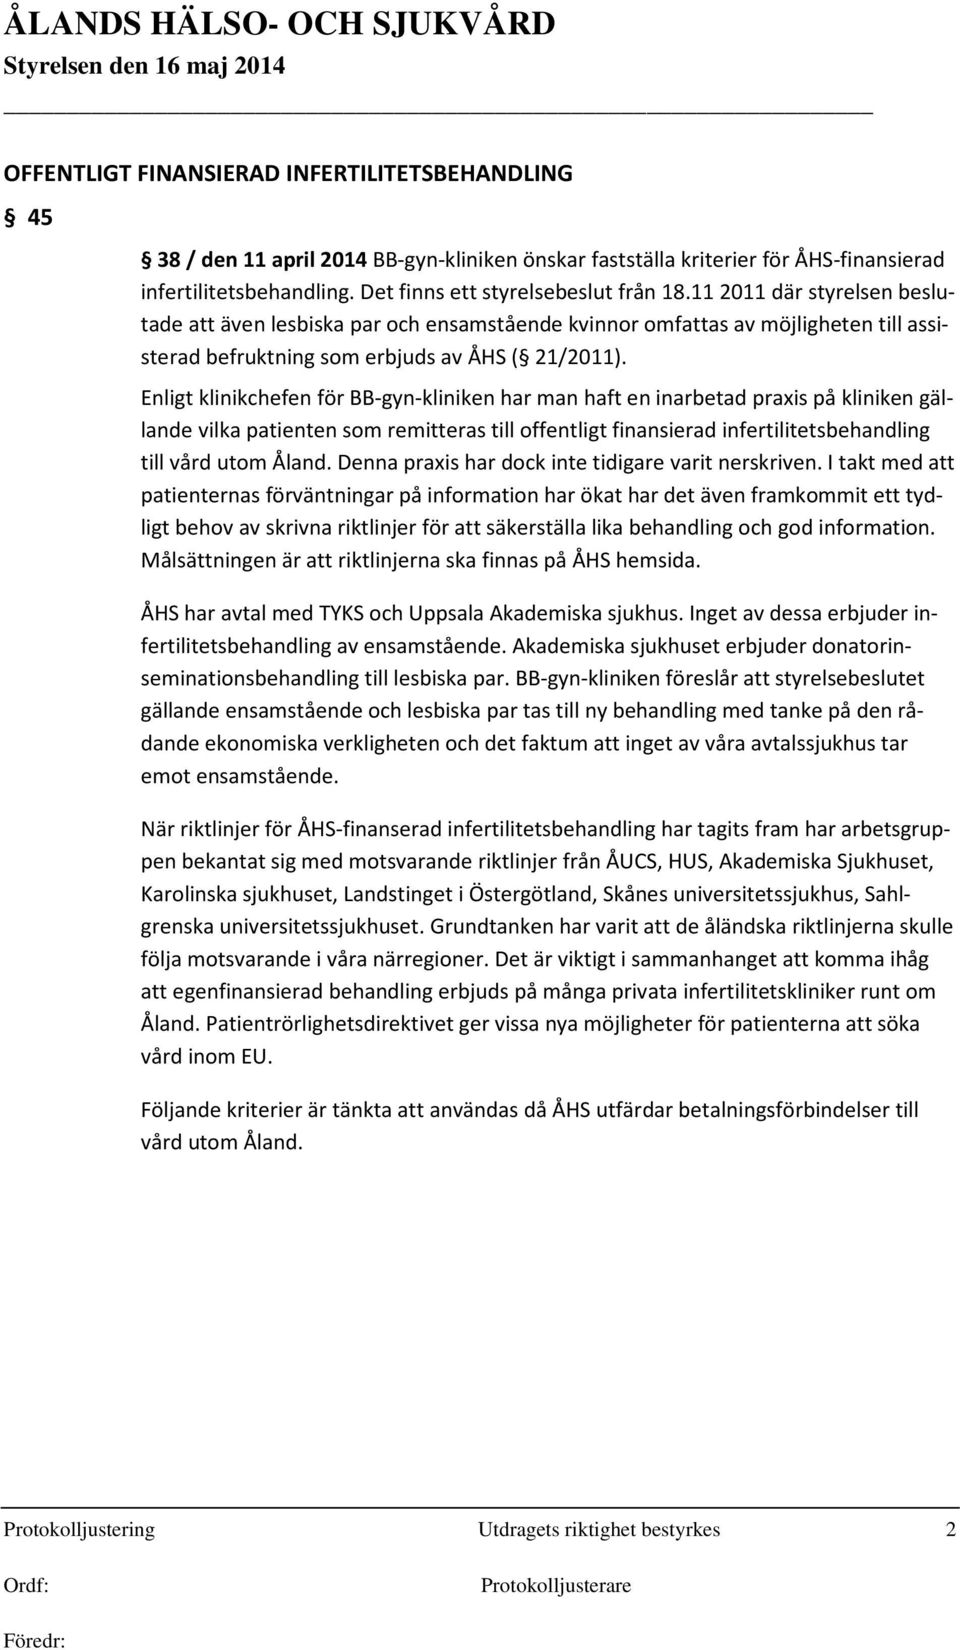 Enligt klinikchefen för BB-gyn-kliniken har man haft en inarbetad praxis på kliniken gällande vilka patienten som remitteras till offentligt finansierad infertilitetsbehandling till vård utom Åland.